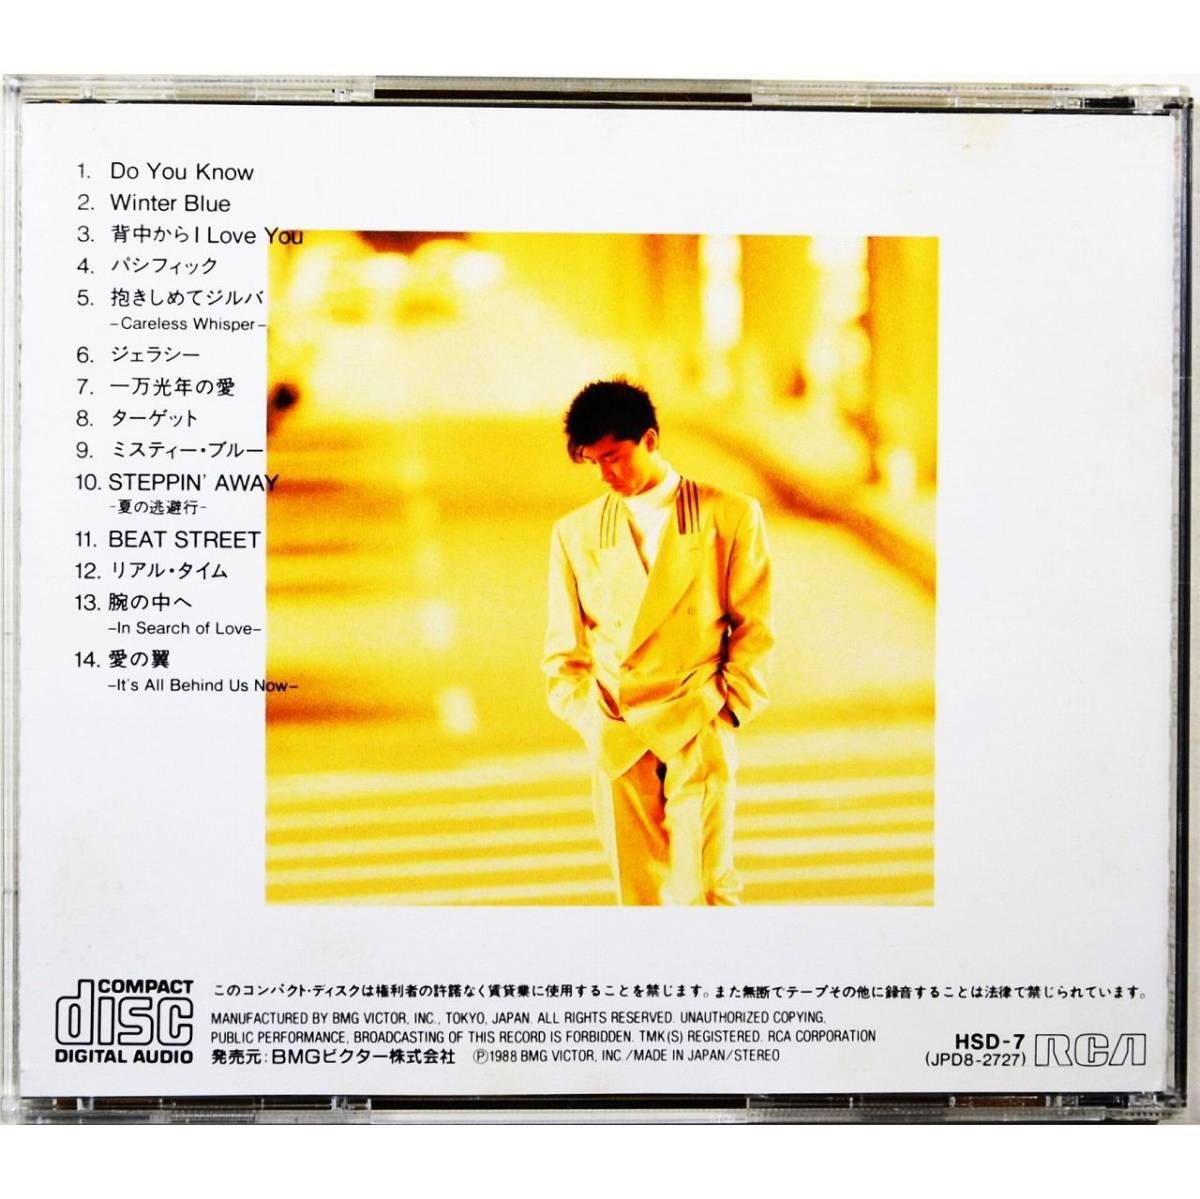 西城秀樹 / HIDEKI CD BOX ～Beloved 120 Songs～ Vol. 7 背中からI Love You /  抱きしめてジルバ-Careless Whisper- / BEAT STREET